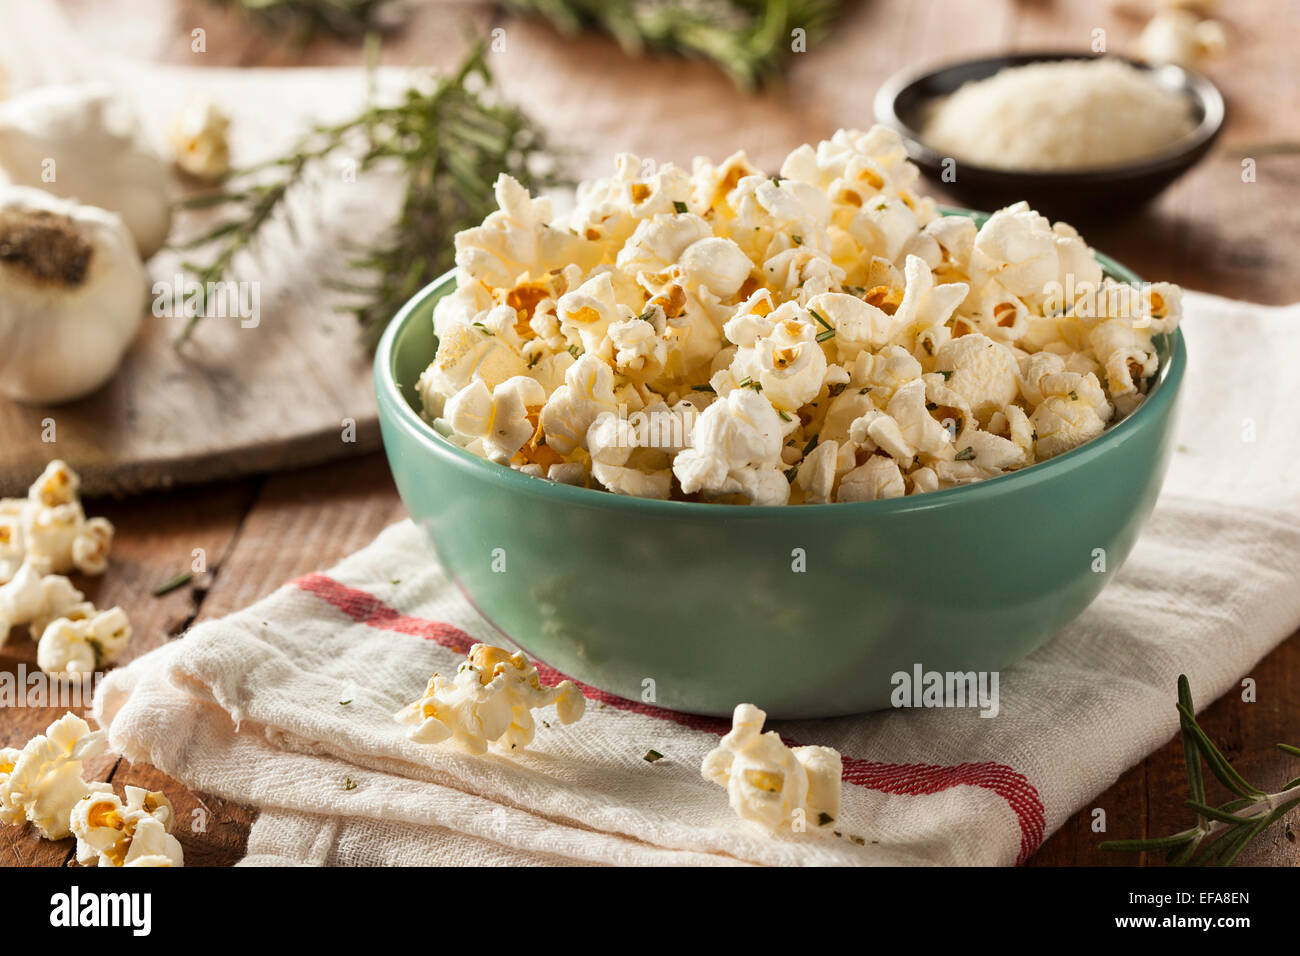 Rosemary Herb et faits maison dans un bol de maïs soufflé au fromage Banque D'Images